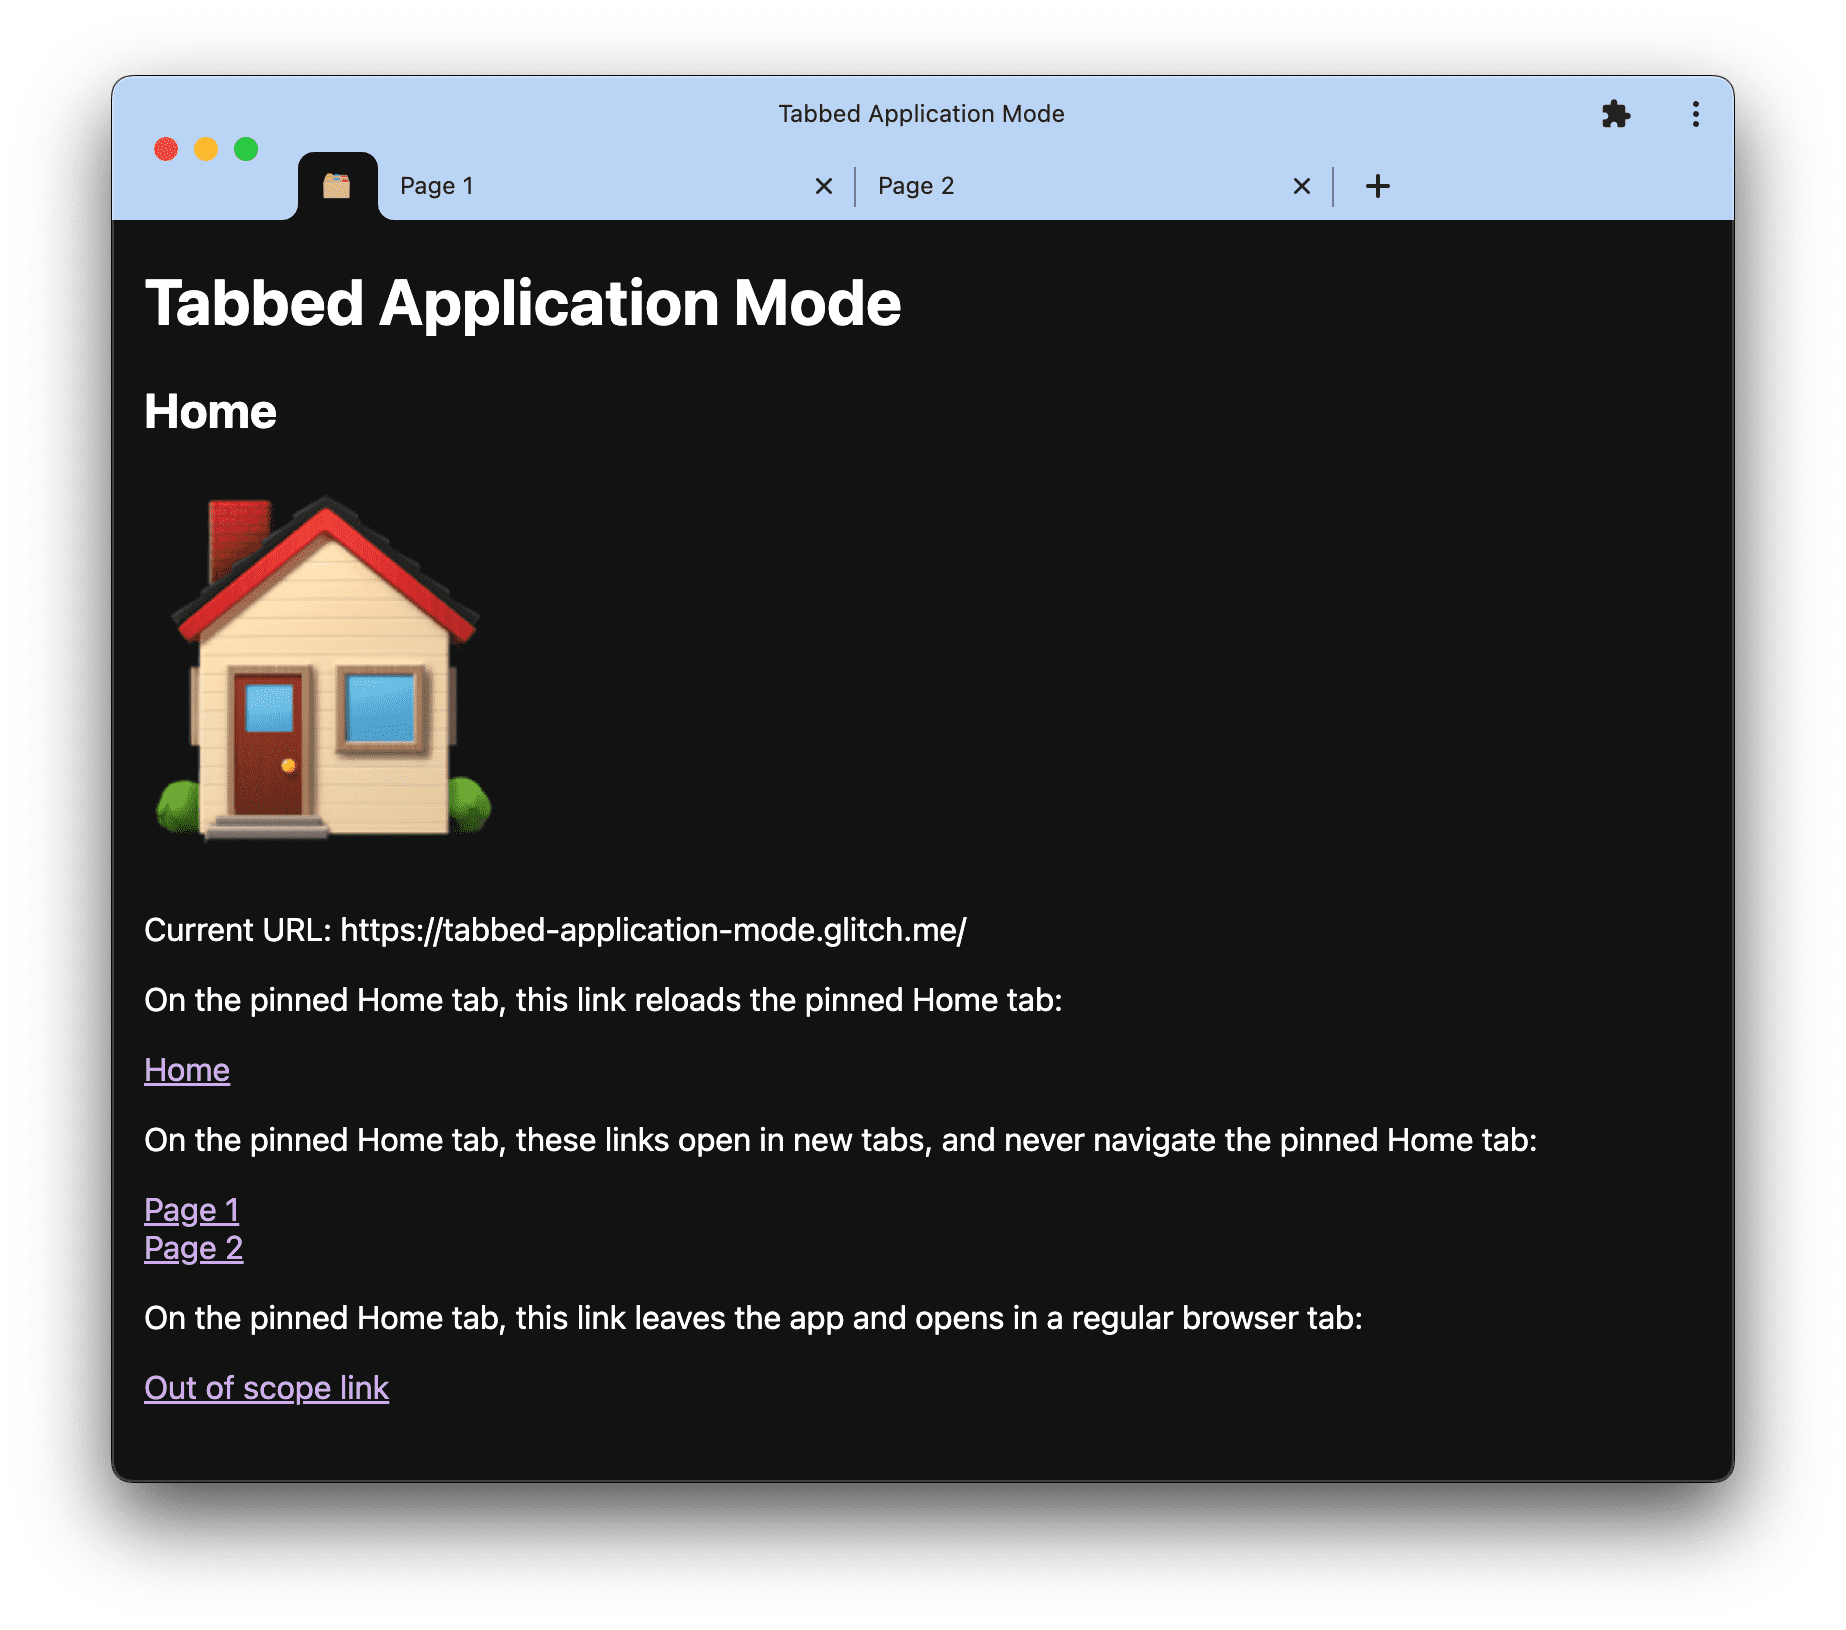 لقطة شاشة للعرض التوضيحي لوضع التطبيق المبوَّب على Tabbed-Application-mode.glitch.me.